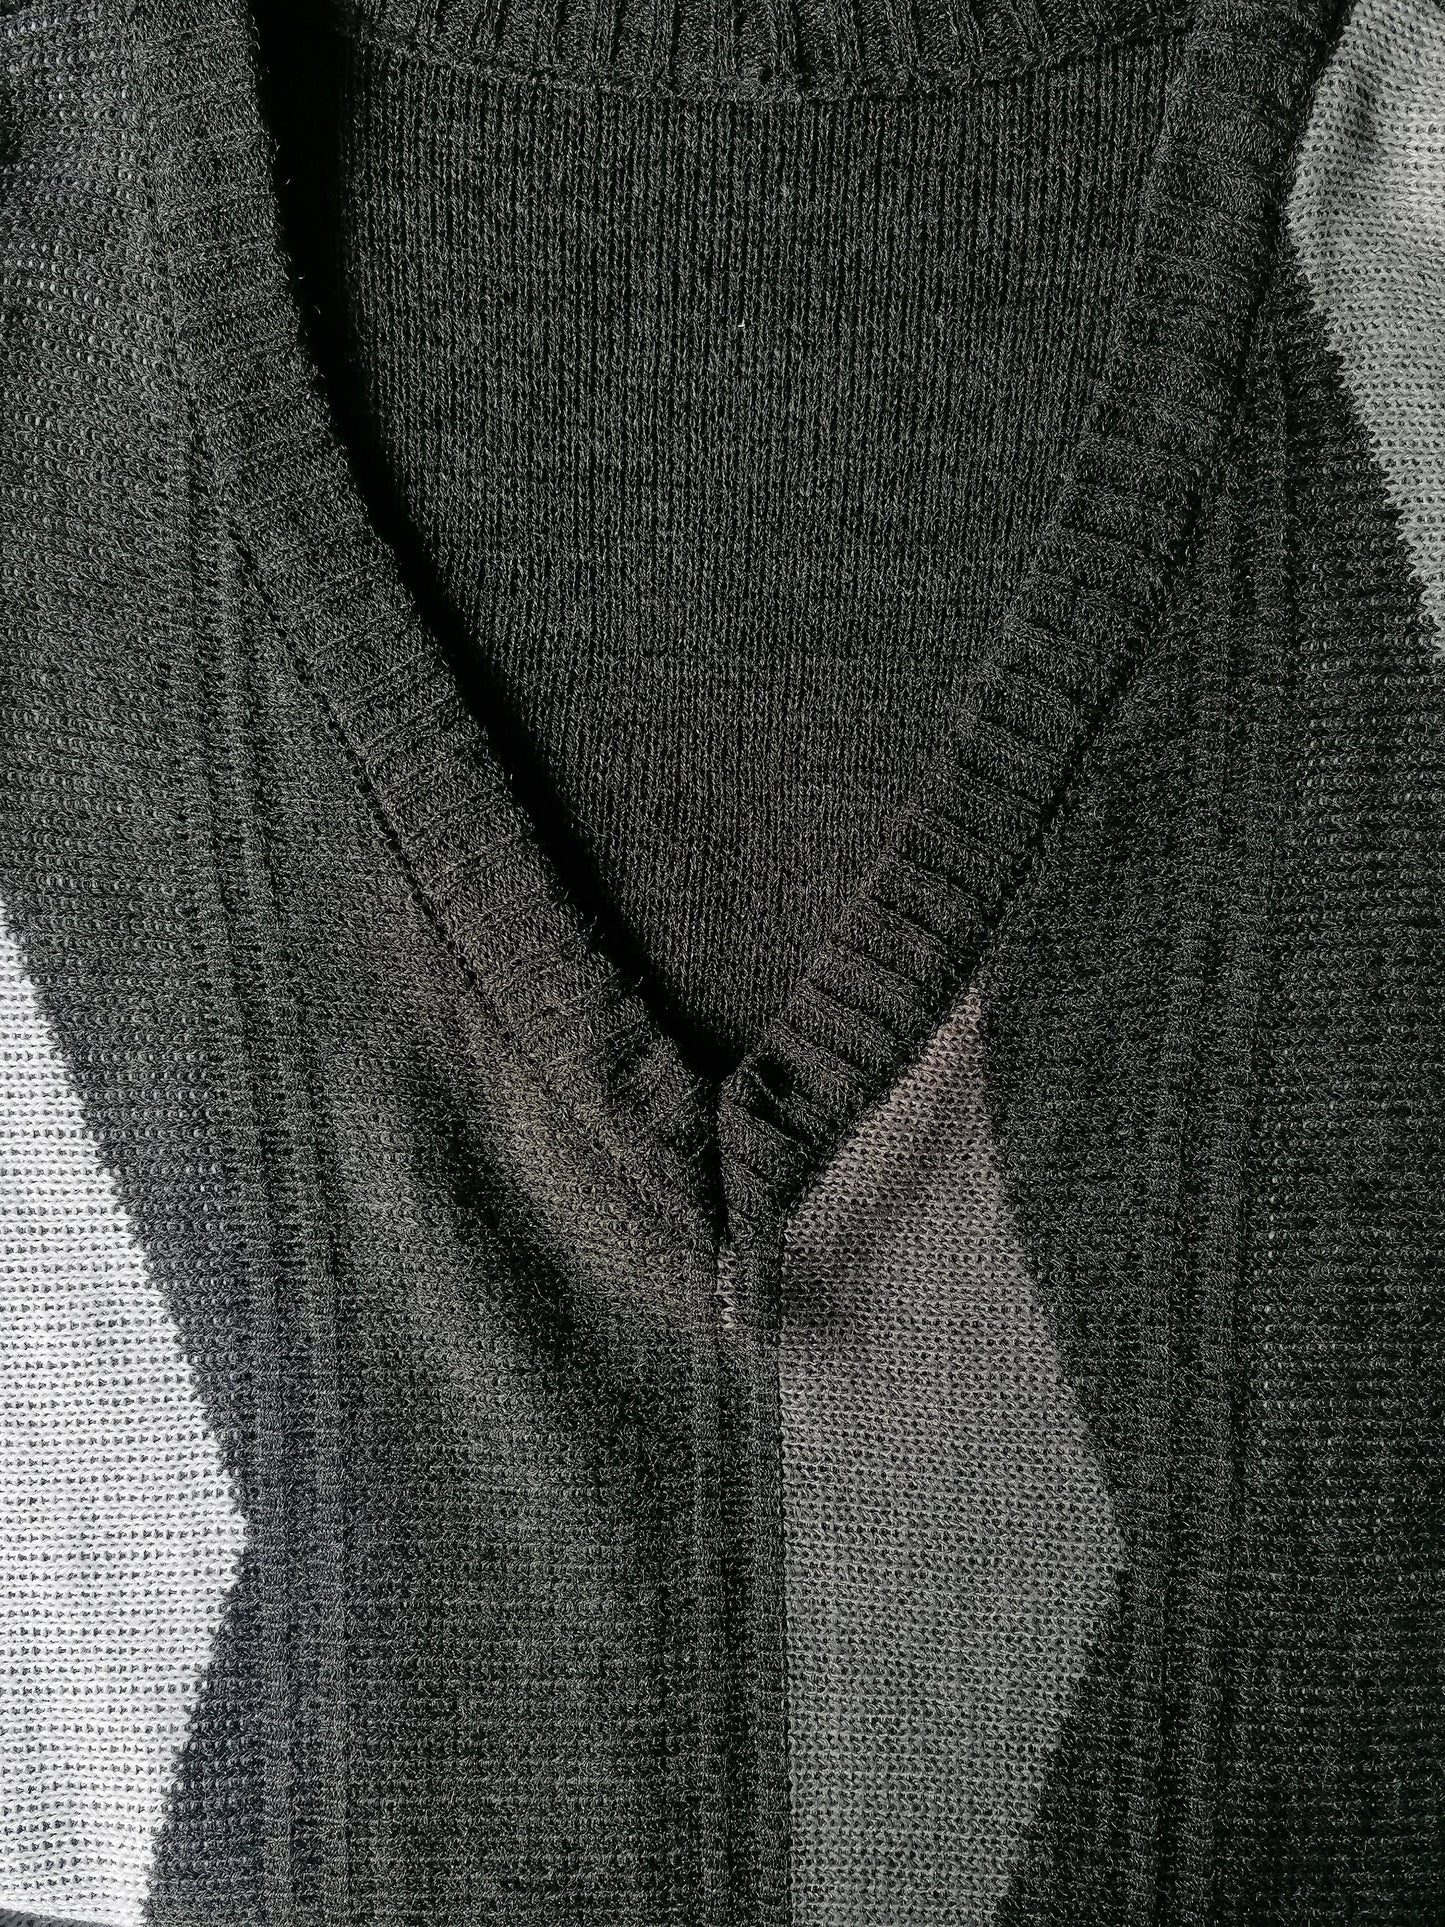 Suéter vintage. Cuello en V. Motivo blanco gris. Tamaño XXL / 2XL.